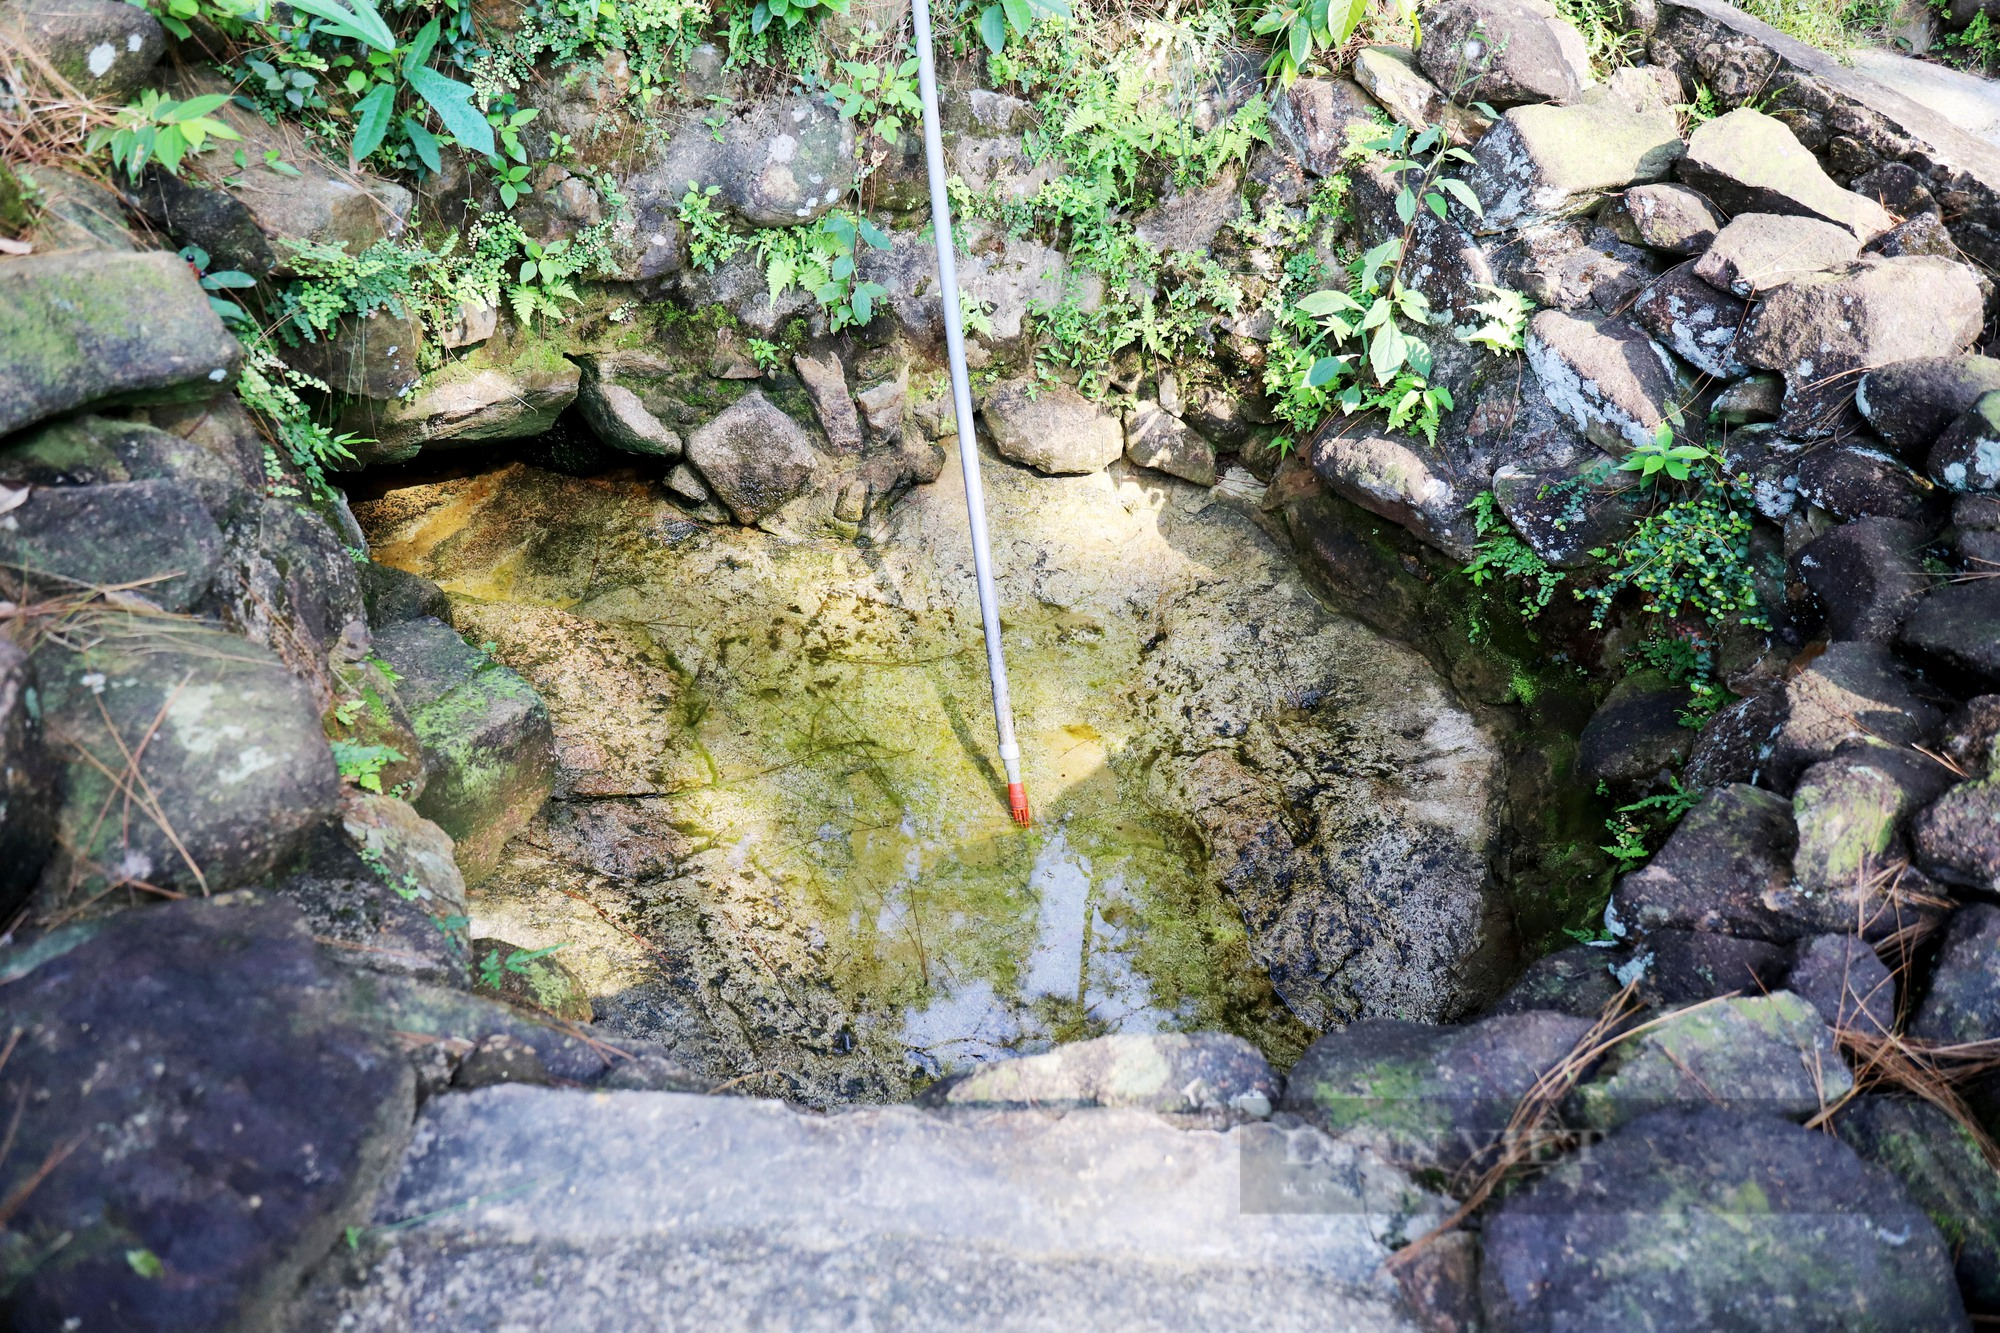 Hà Tĩnh: Huyền bí ngôi chùa nhà Trần được tiên nữ xuống dạo chơi, rửa chân in dấu tích - Ảnh 7.